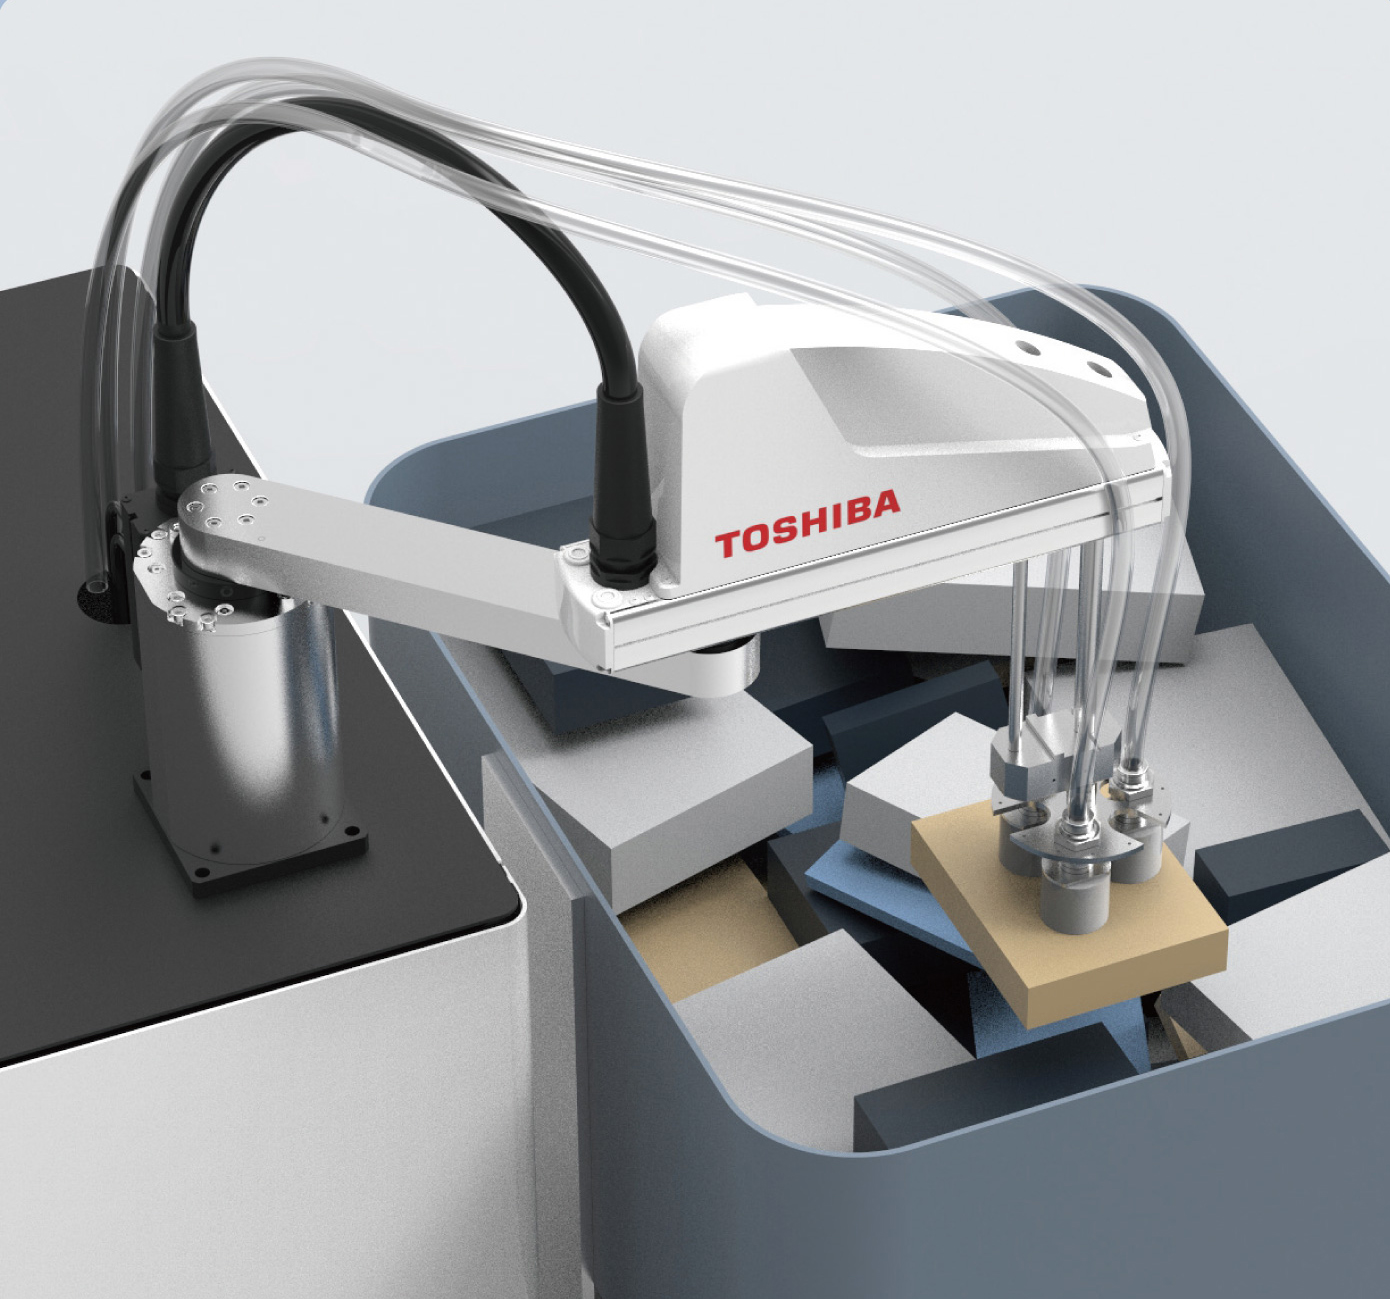 Der Kommisionierroboter von Toshiba kann u.a. flache Briefumschläge und Pakete mit schneller Geschwindigkeit greifen und positionieren. (Bild: Toshiba Europe GmbH)